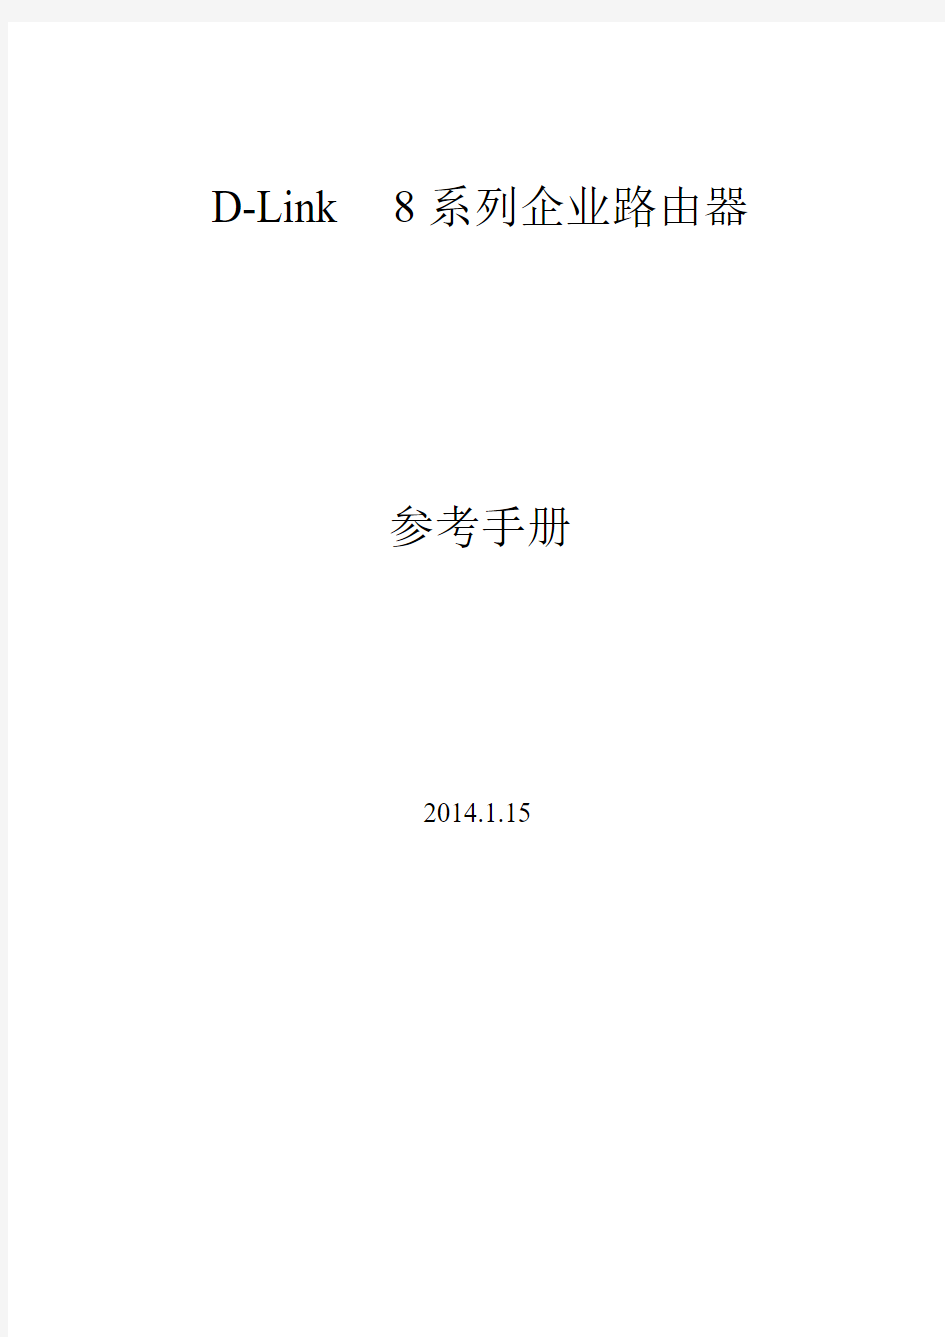 D-link 8系路由器用户手册